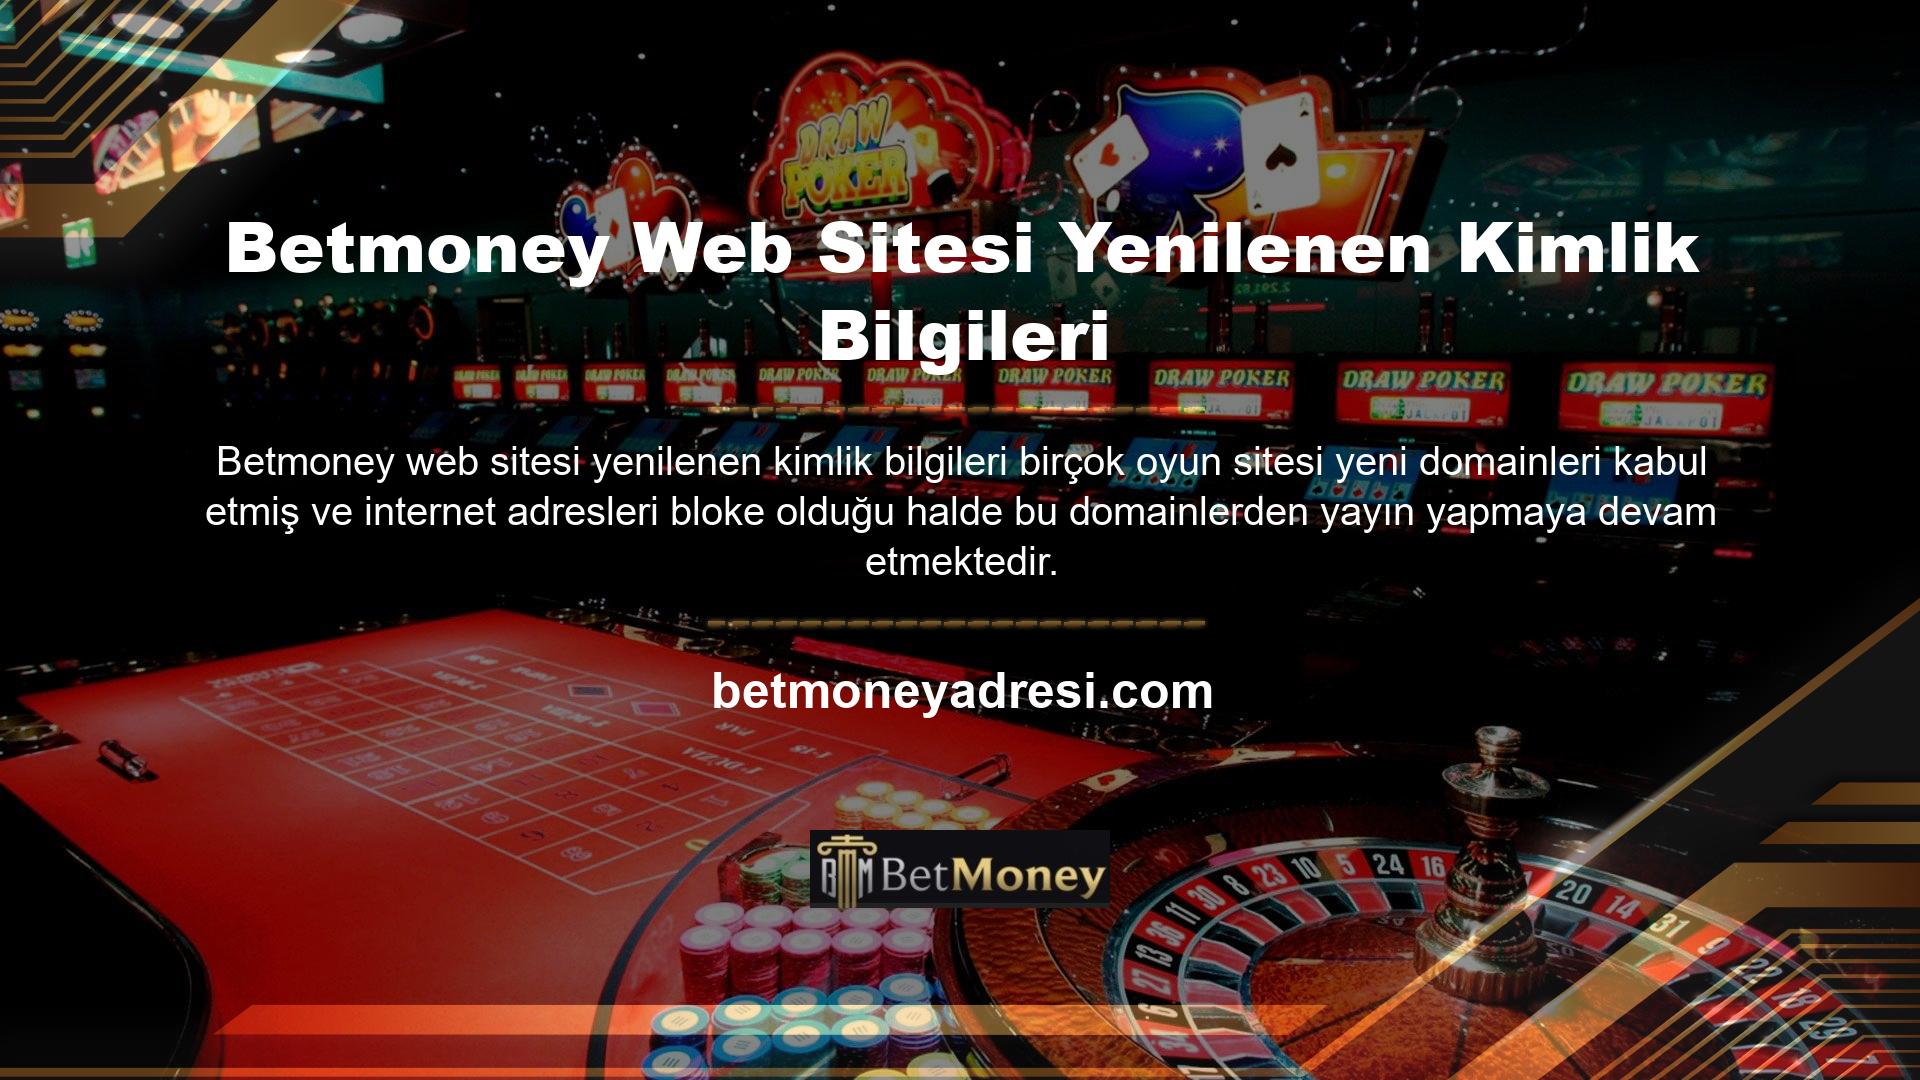 Betmoney web sitesi de site adının sonundaki sayıyı değiştirerek ve yeni öğeler ekleyerek bu tekniği sürdürdü